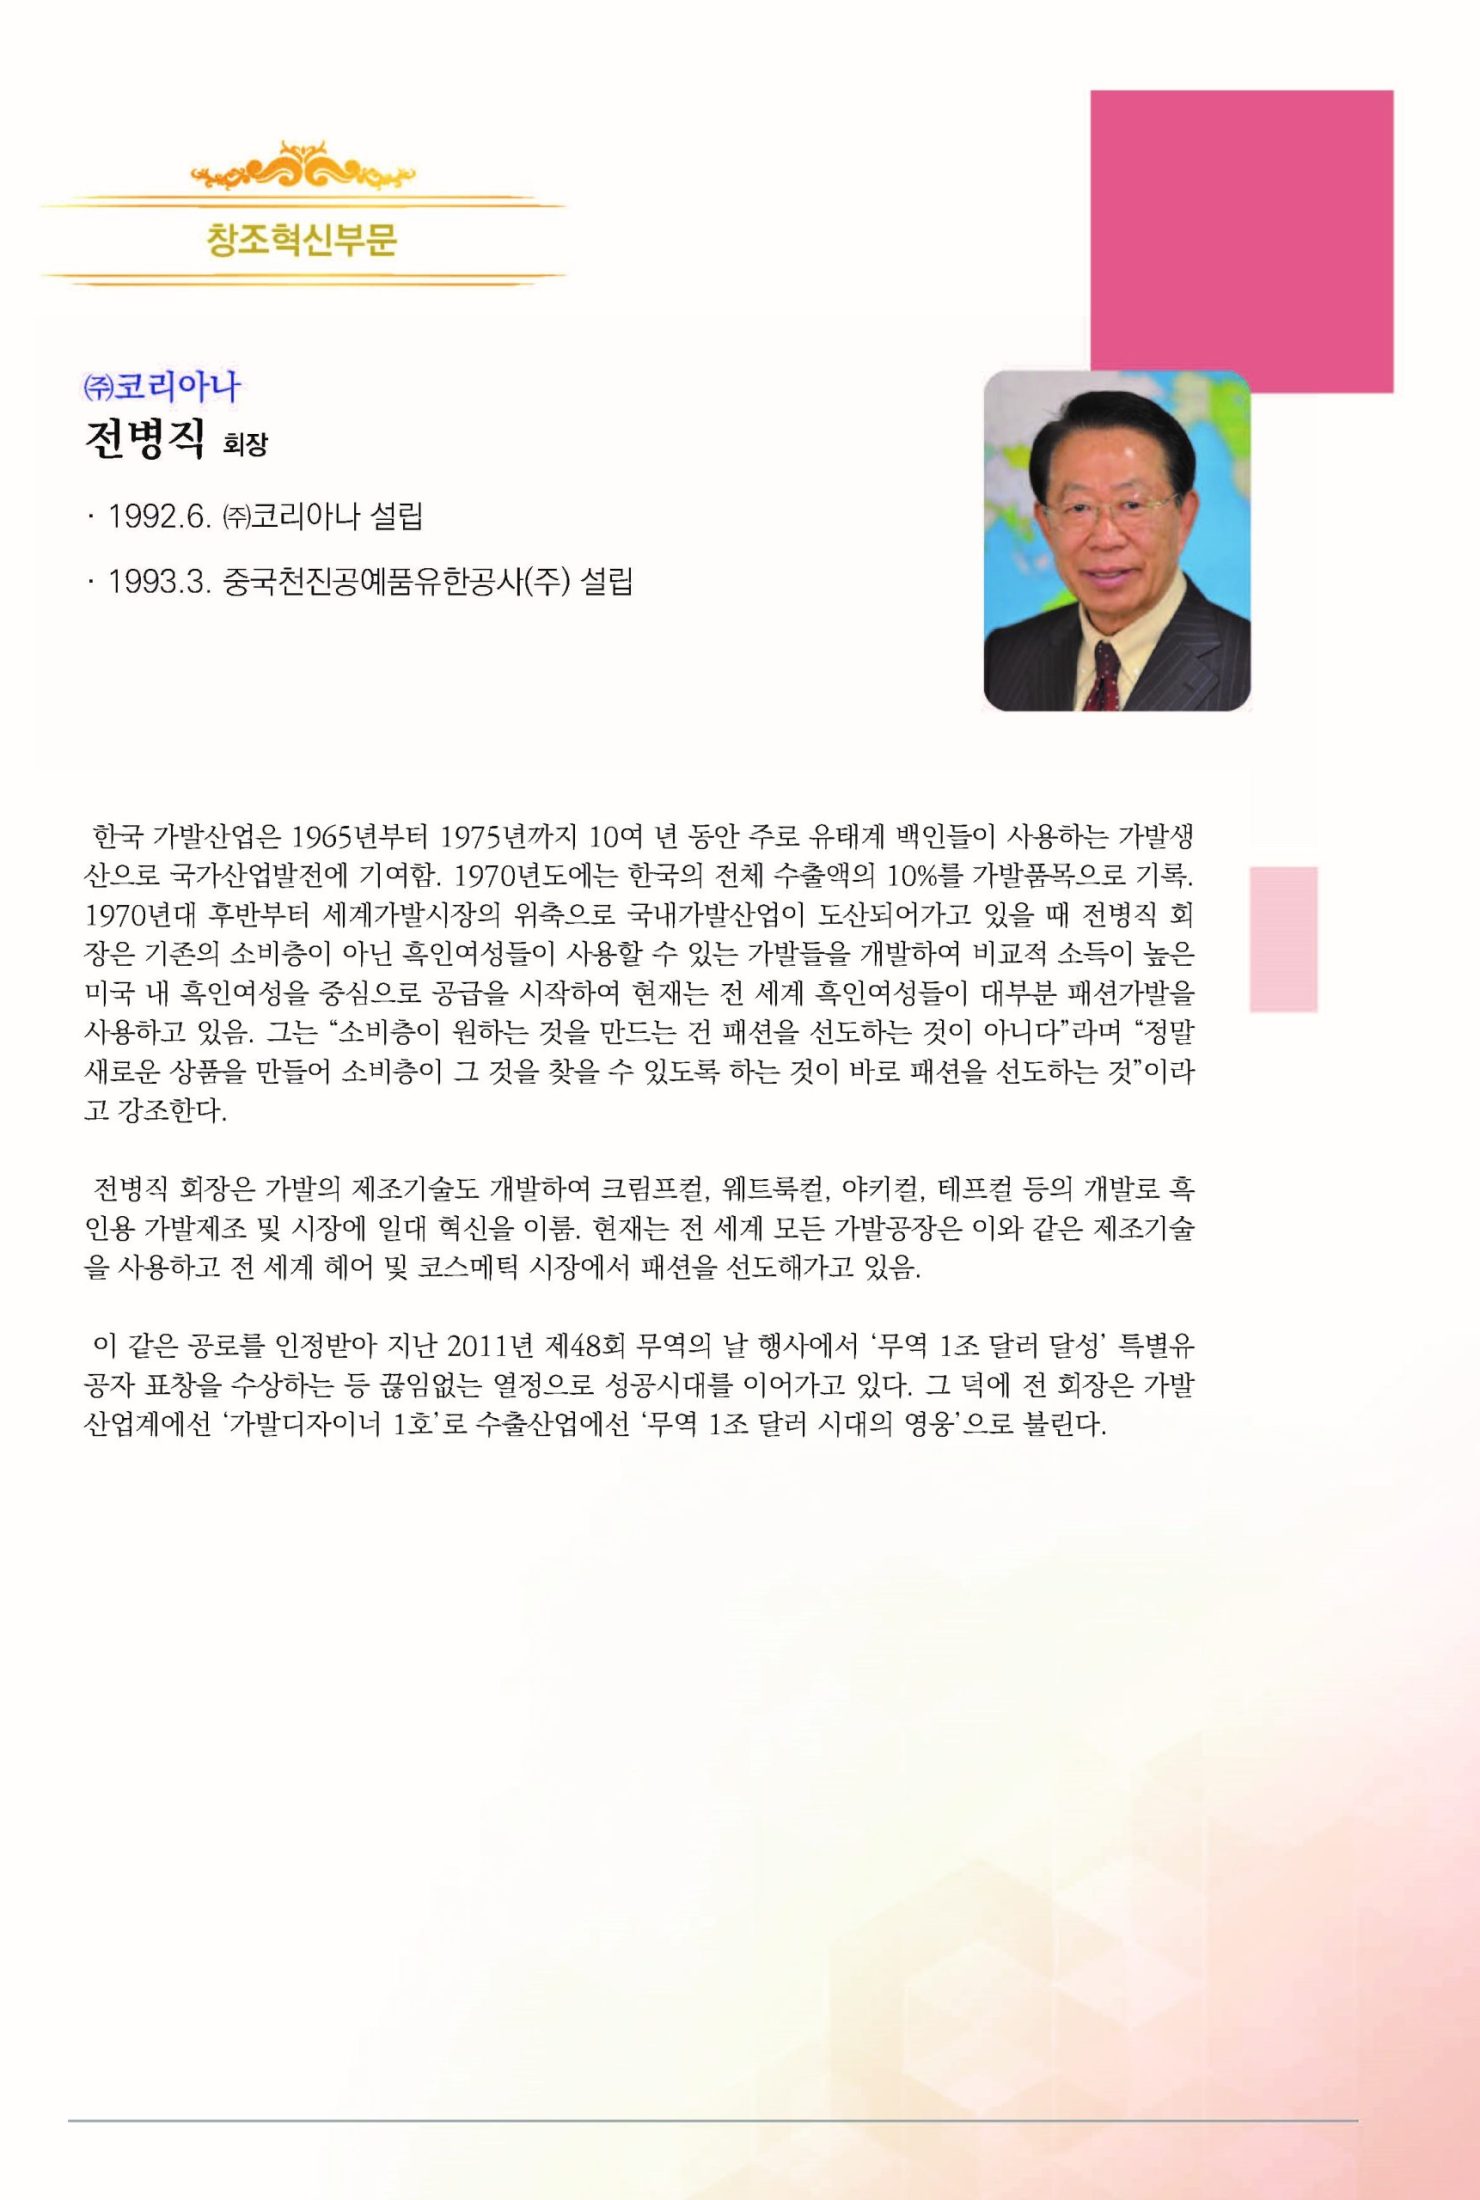 6회 HDI 인간경영대상 시상식(책자)_20201014(2)_페이지_09s